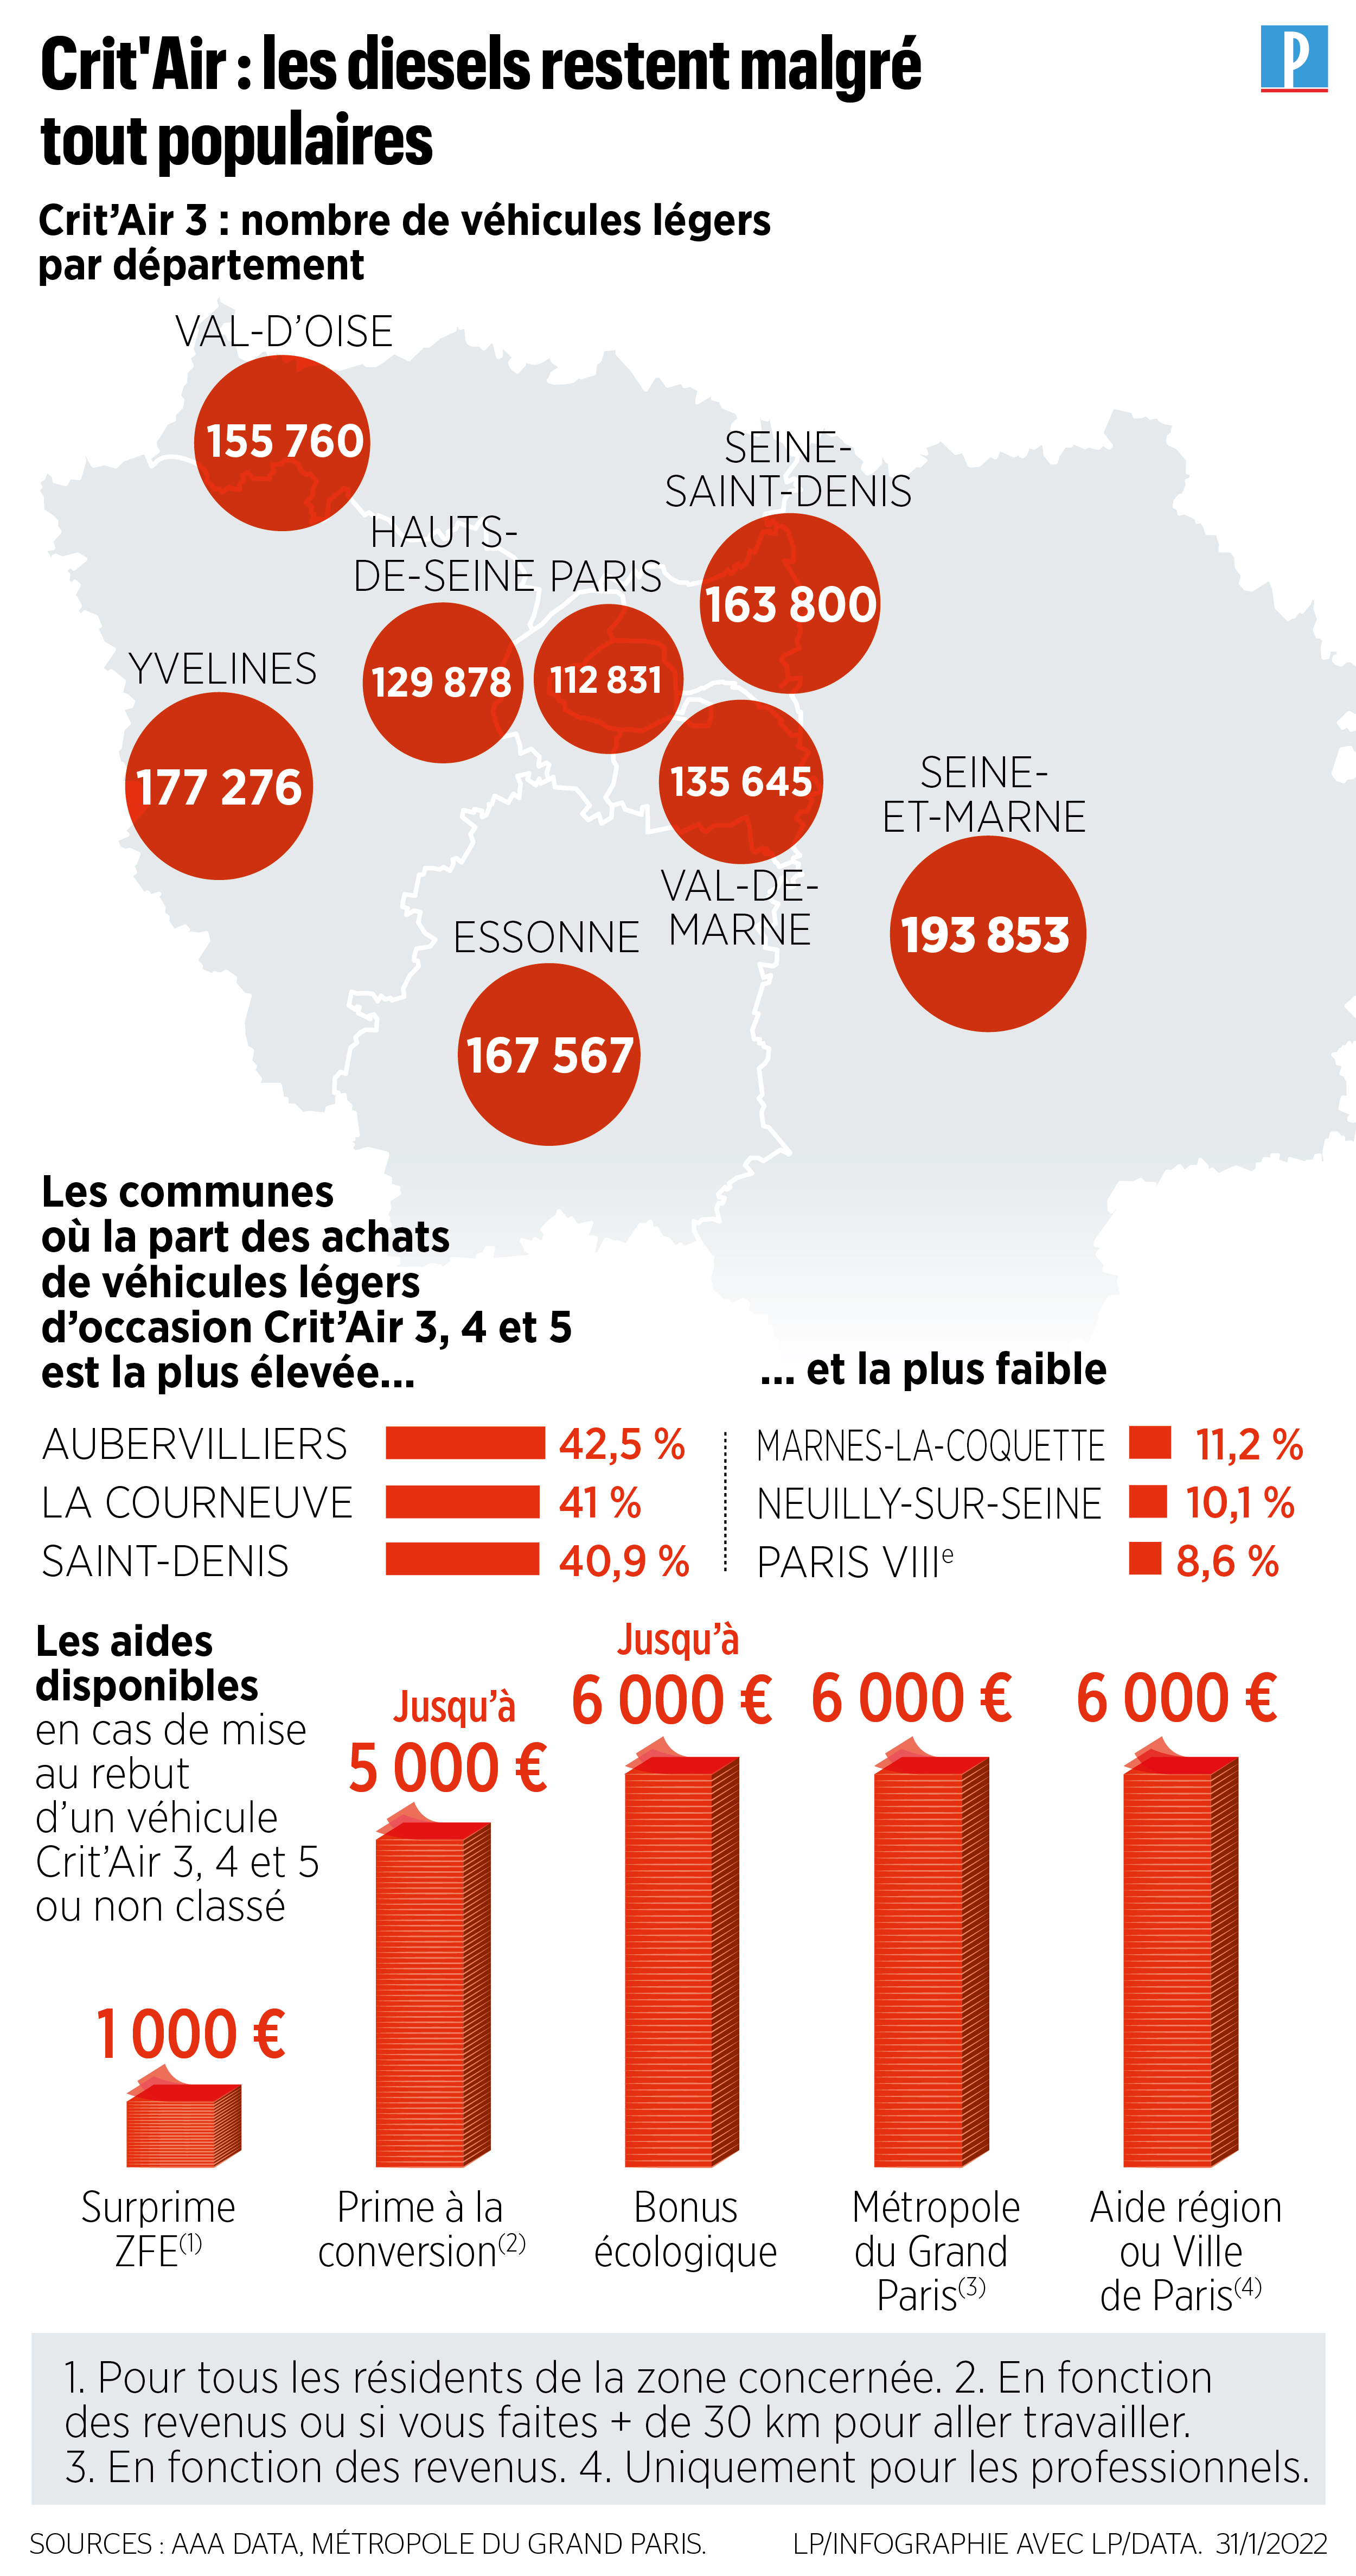 Voitures Diesel : quand seront-elles vraiment interdites en France ?